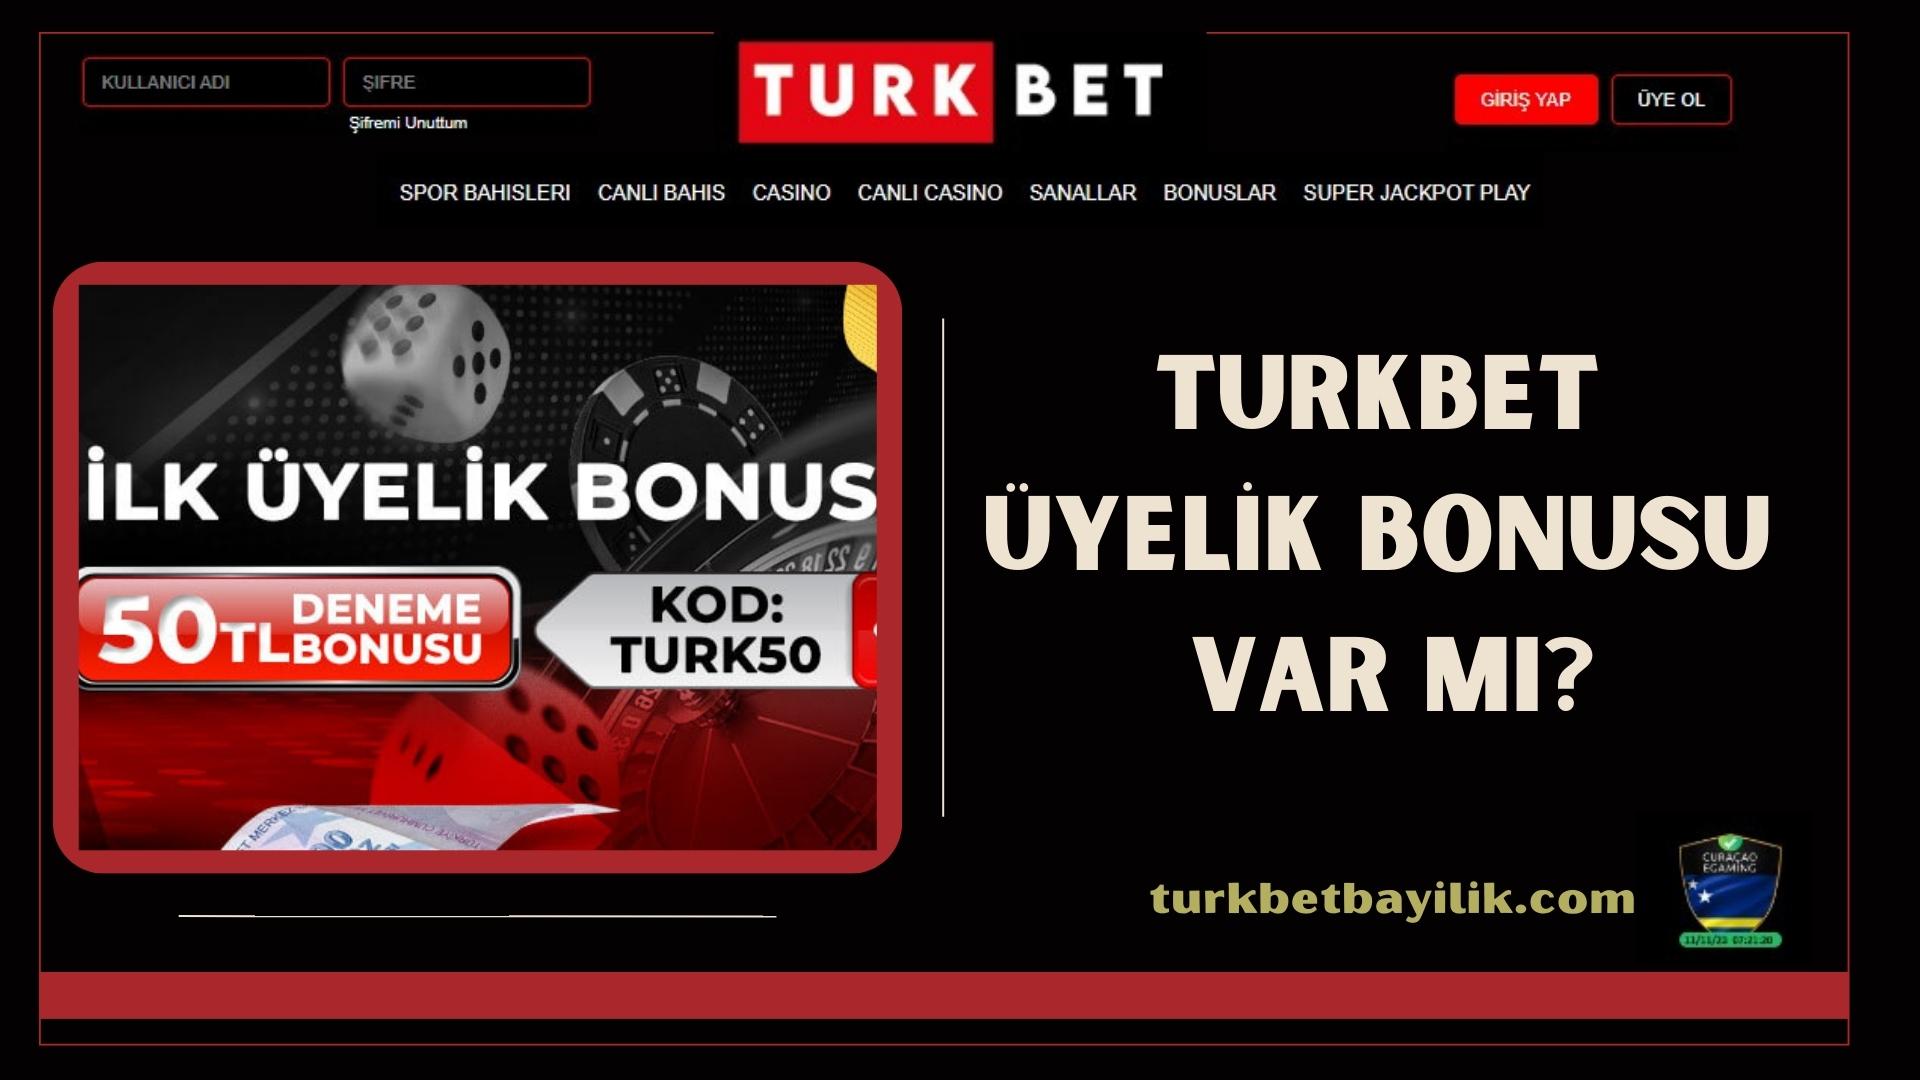 Turkbet Üyelik Bonusu Var Mı?